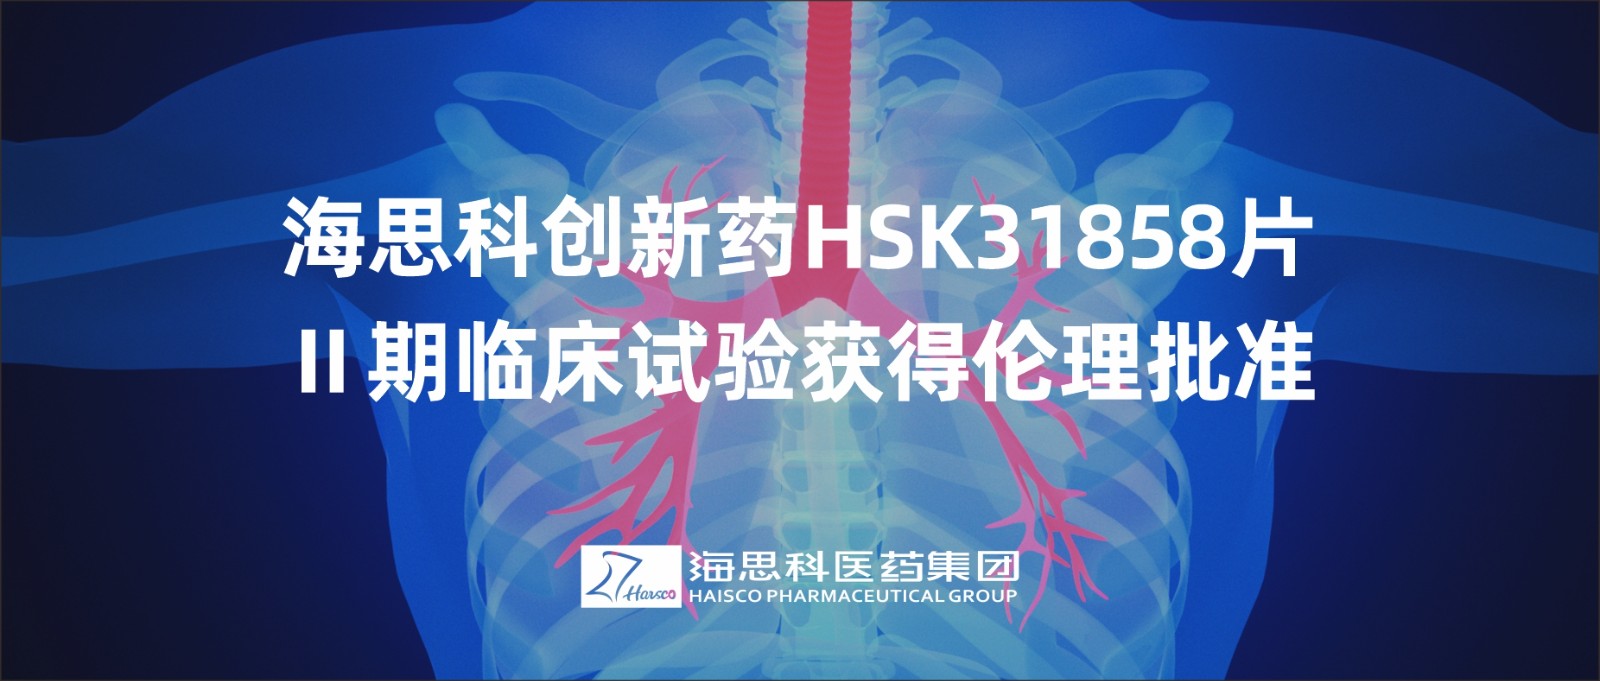 海思科創新藥HSK31858片Ⅱ期臨床試驗獲得倫理批準